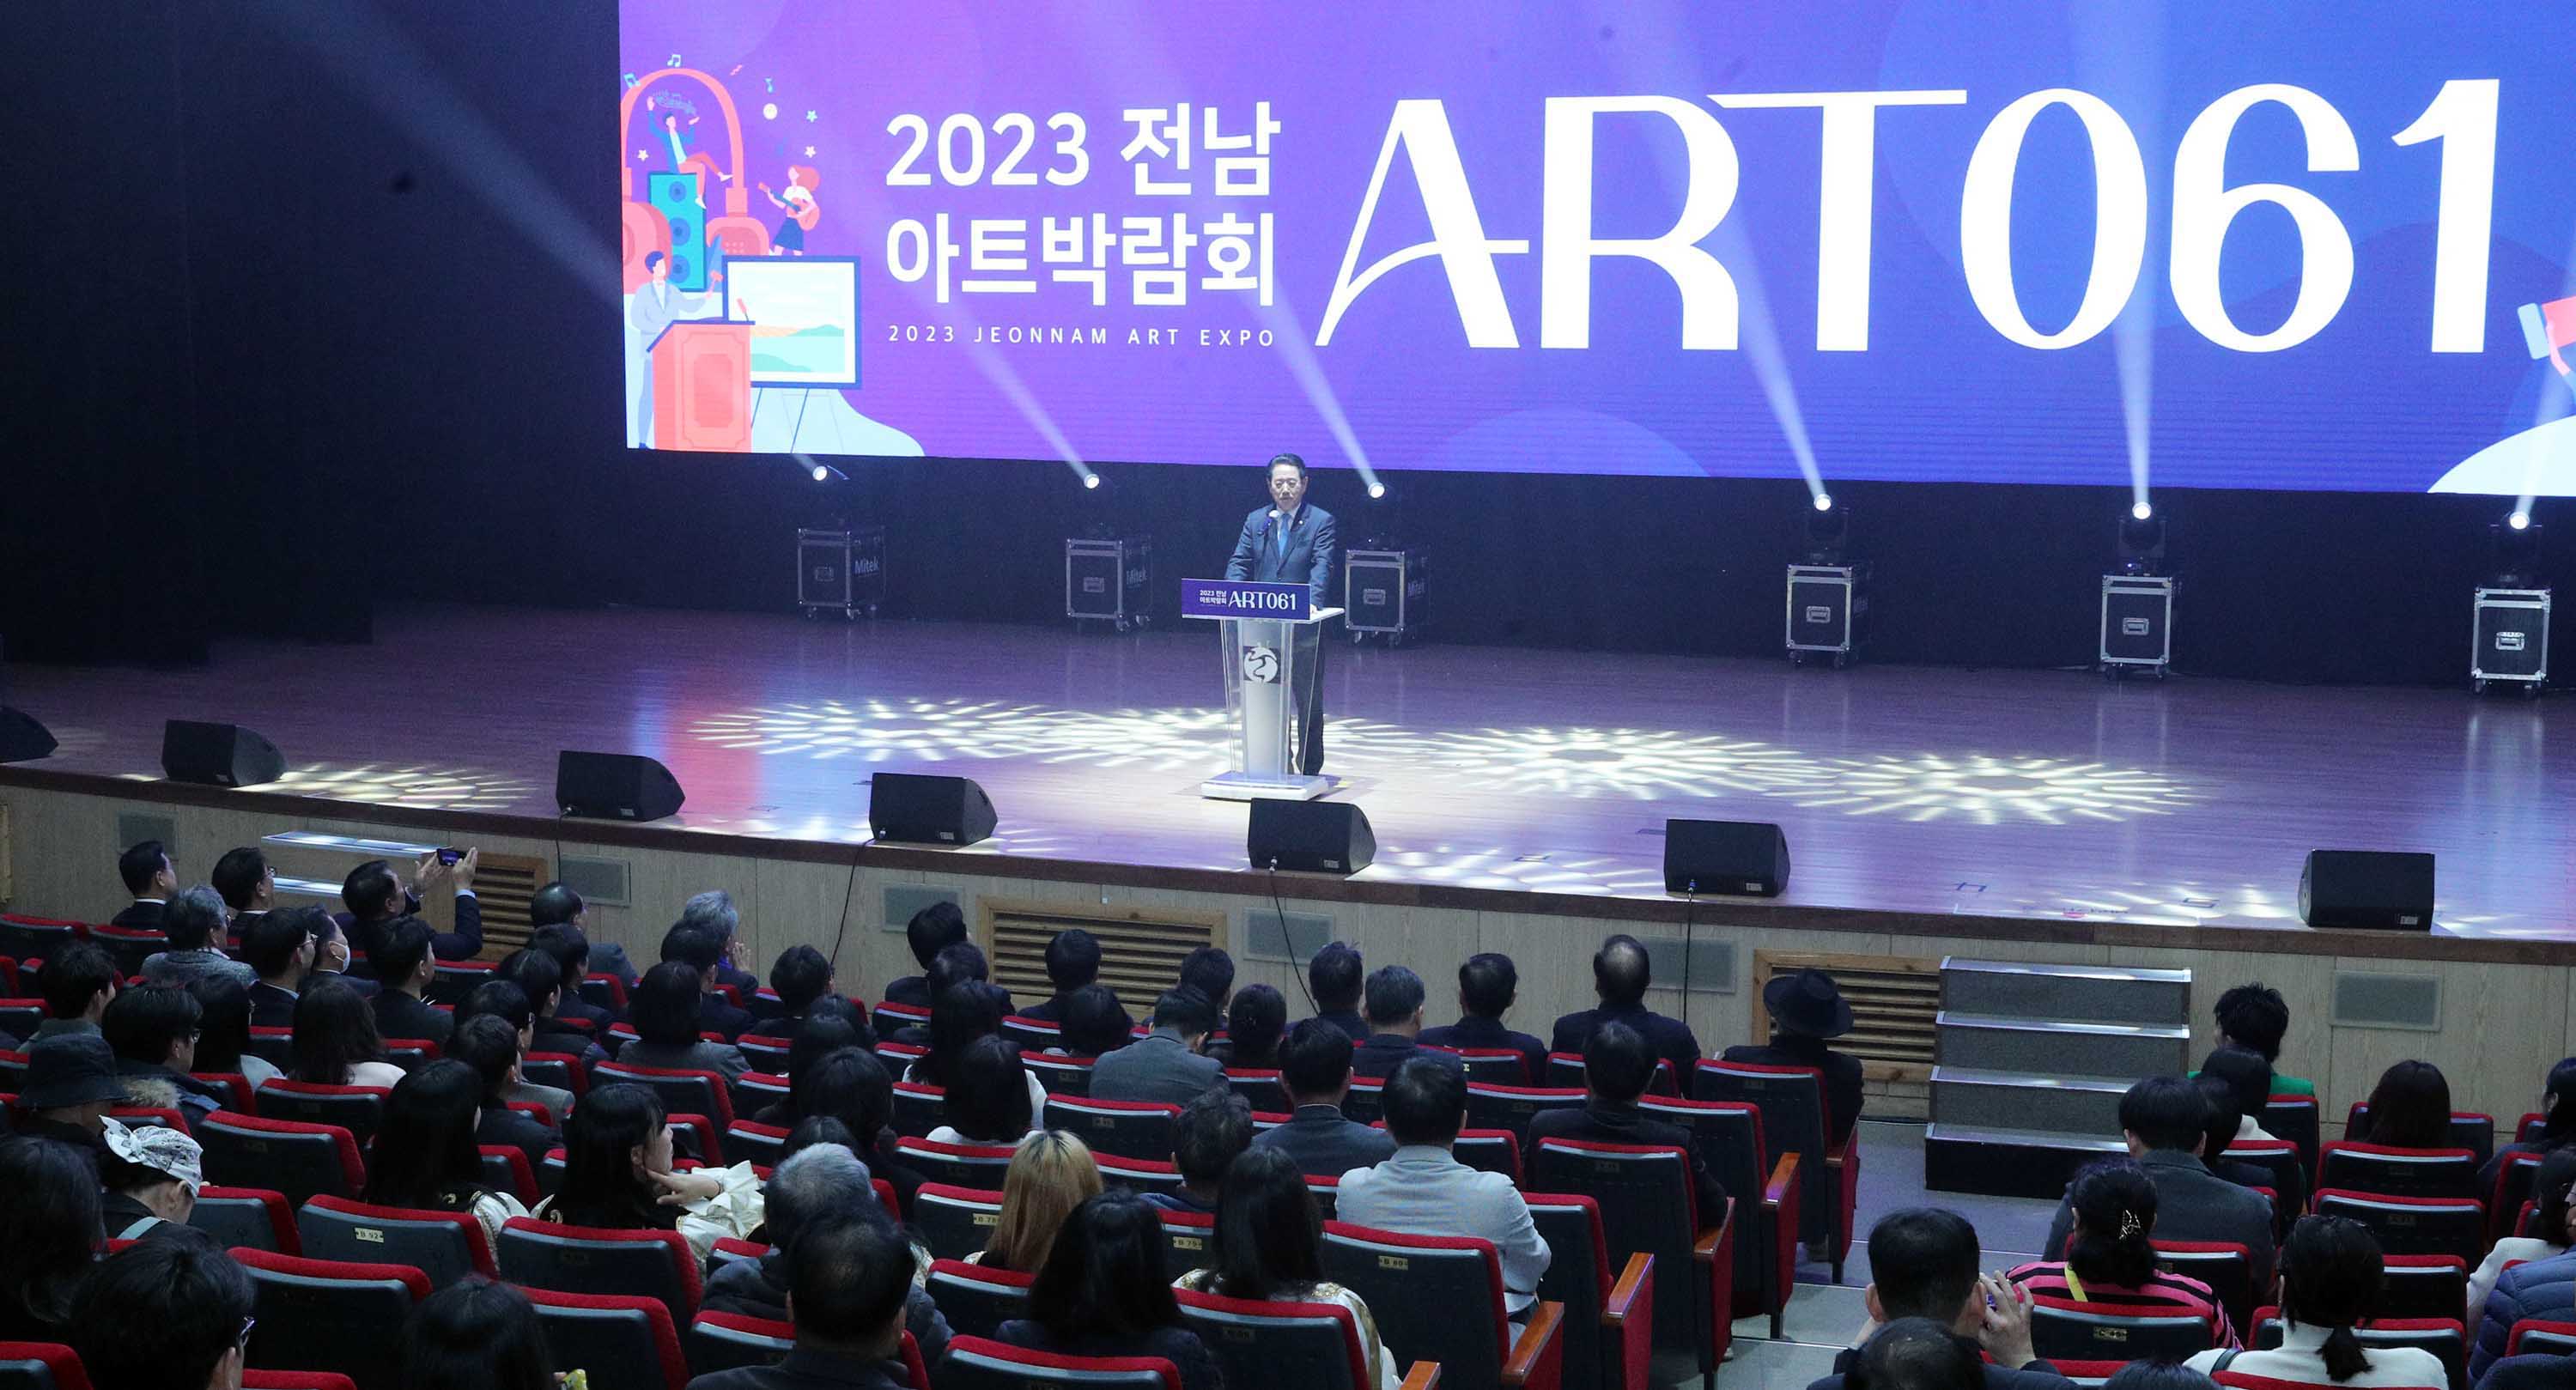 2023 전남아트박람회 'ART 061' 개막식2